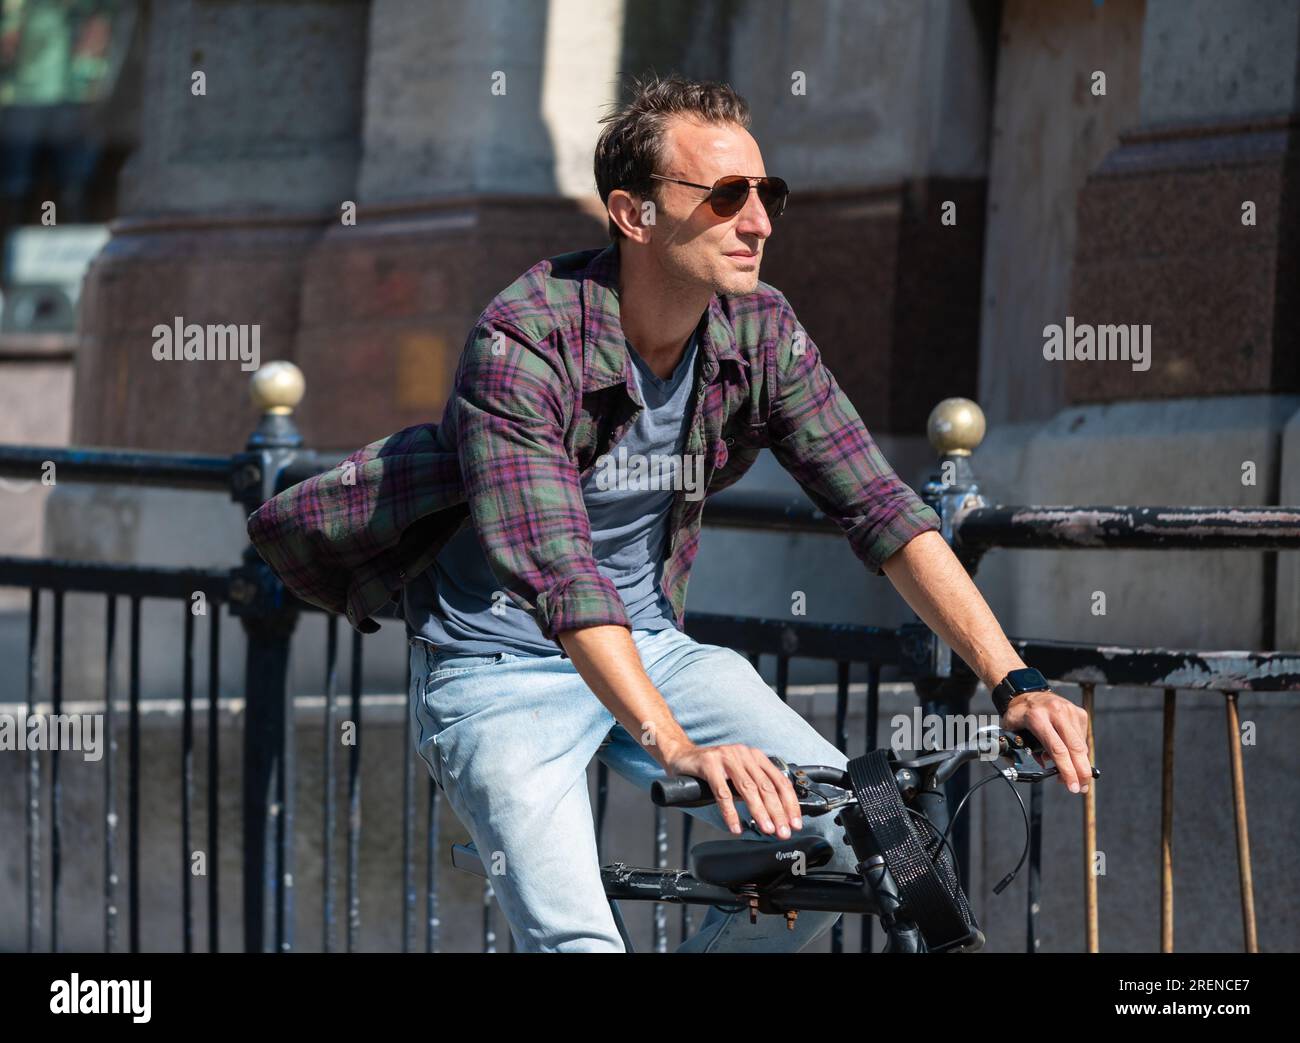 Junger männlicher Radfahrer, junger Mann, der im Sommer in einer geschäftigen Stadt Fahrrad fährt, ohne Helm, in England, Großbritannien. Gesunder Lebensstil. Stockfoto